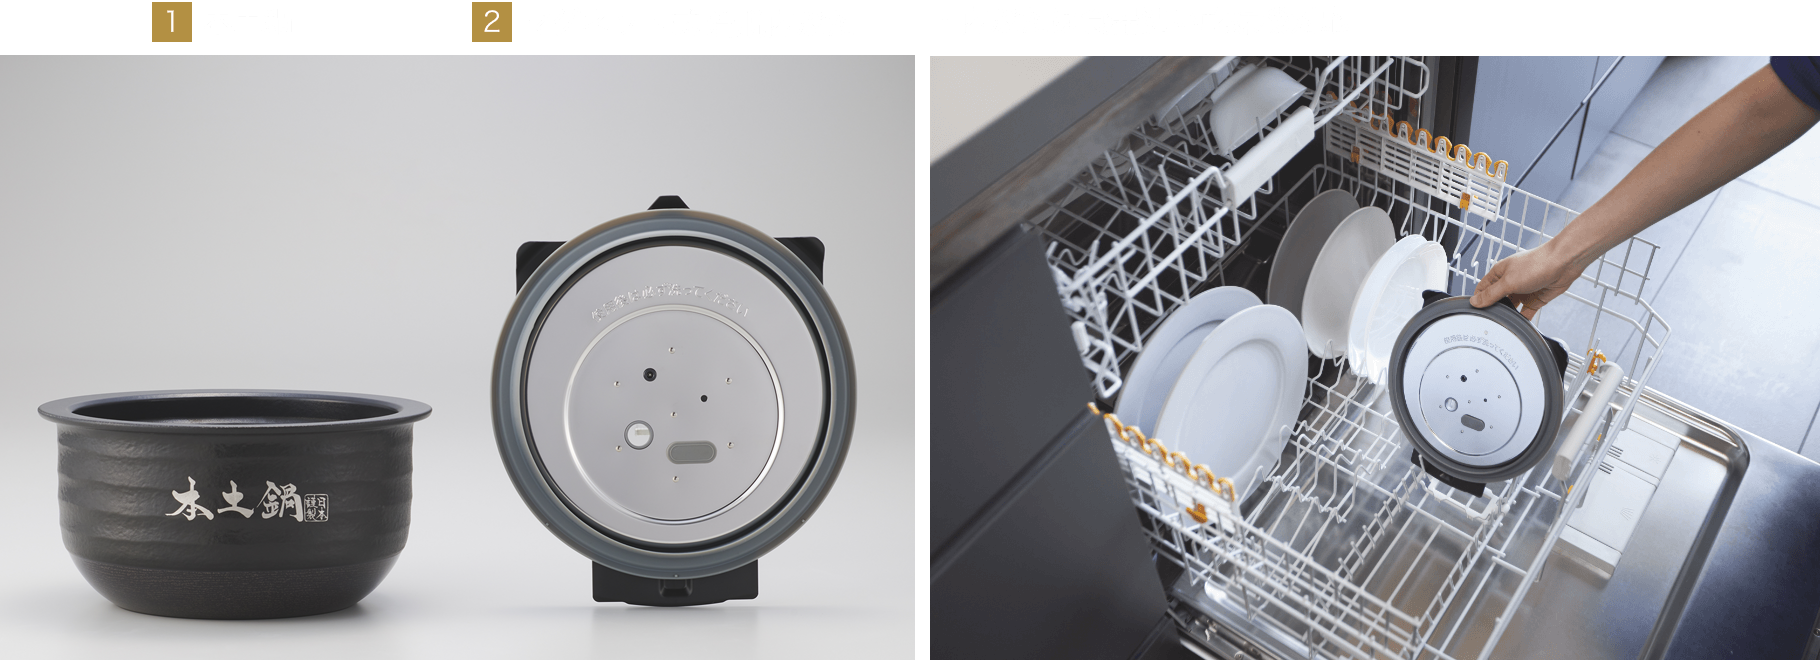 1 Authentic ceramic inner pot, 2 Magnetic detachable inner lid, The inner lid is dishwasher-safe